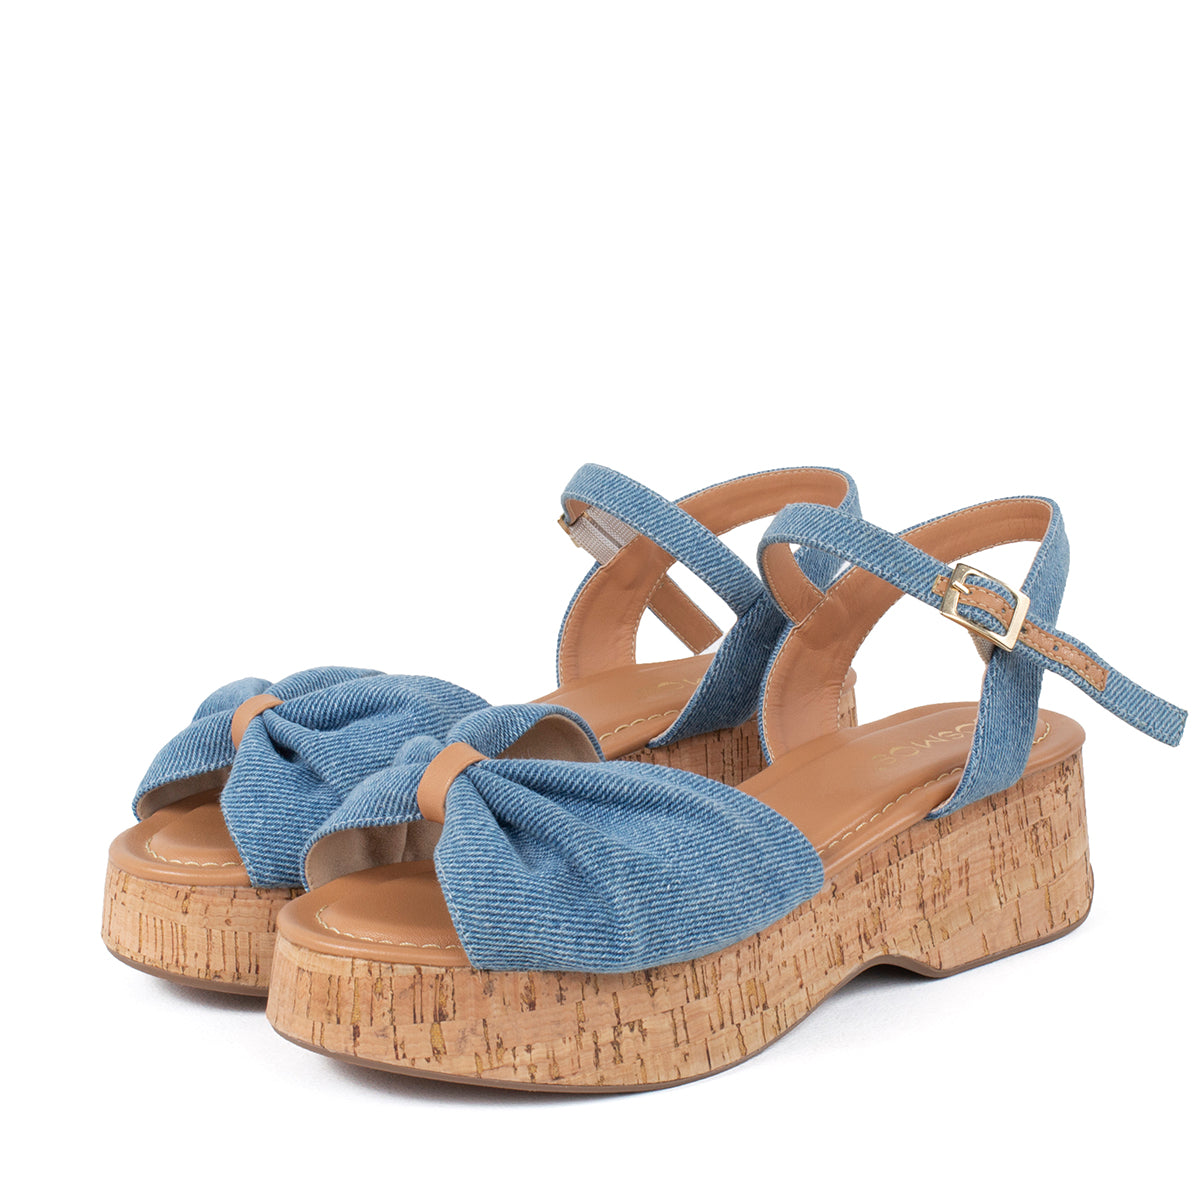 Sandalia color azul denim con correa